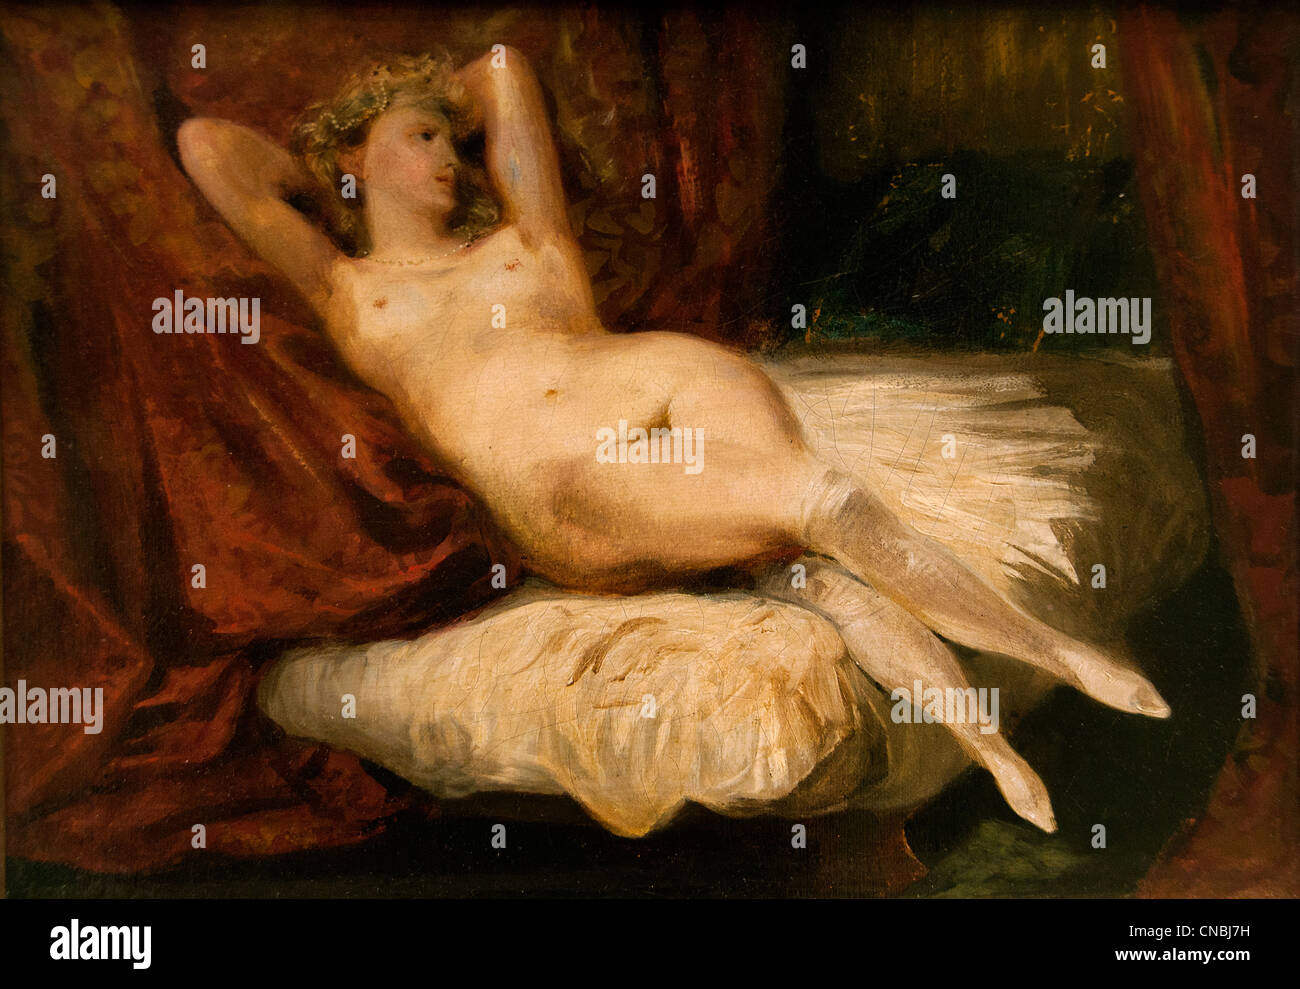 La femme aux bas blancs - La femme aux bas blancs par Ferdinand Victor Eugène Delacroix 1798 - 1863 France Banque D'Images